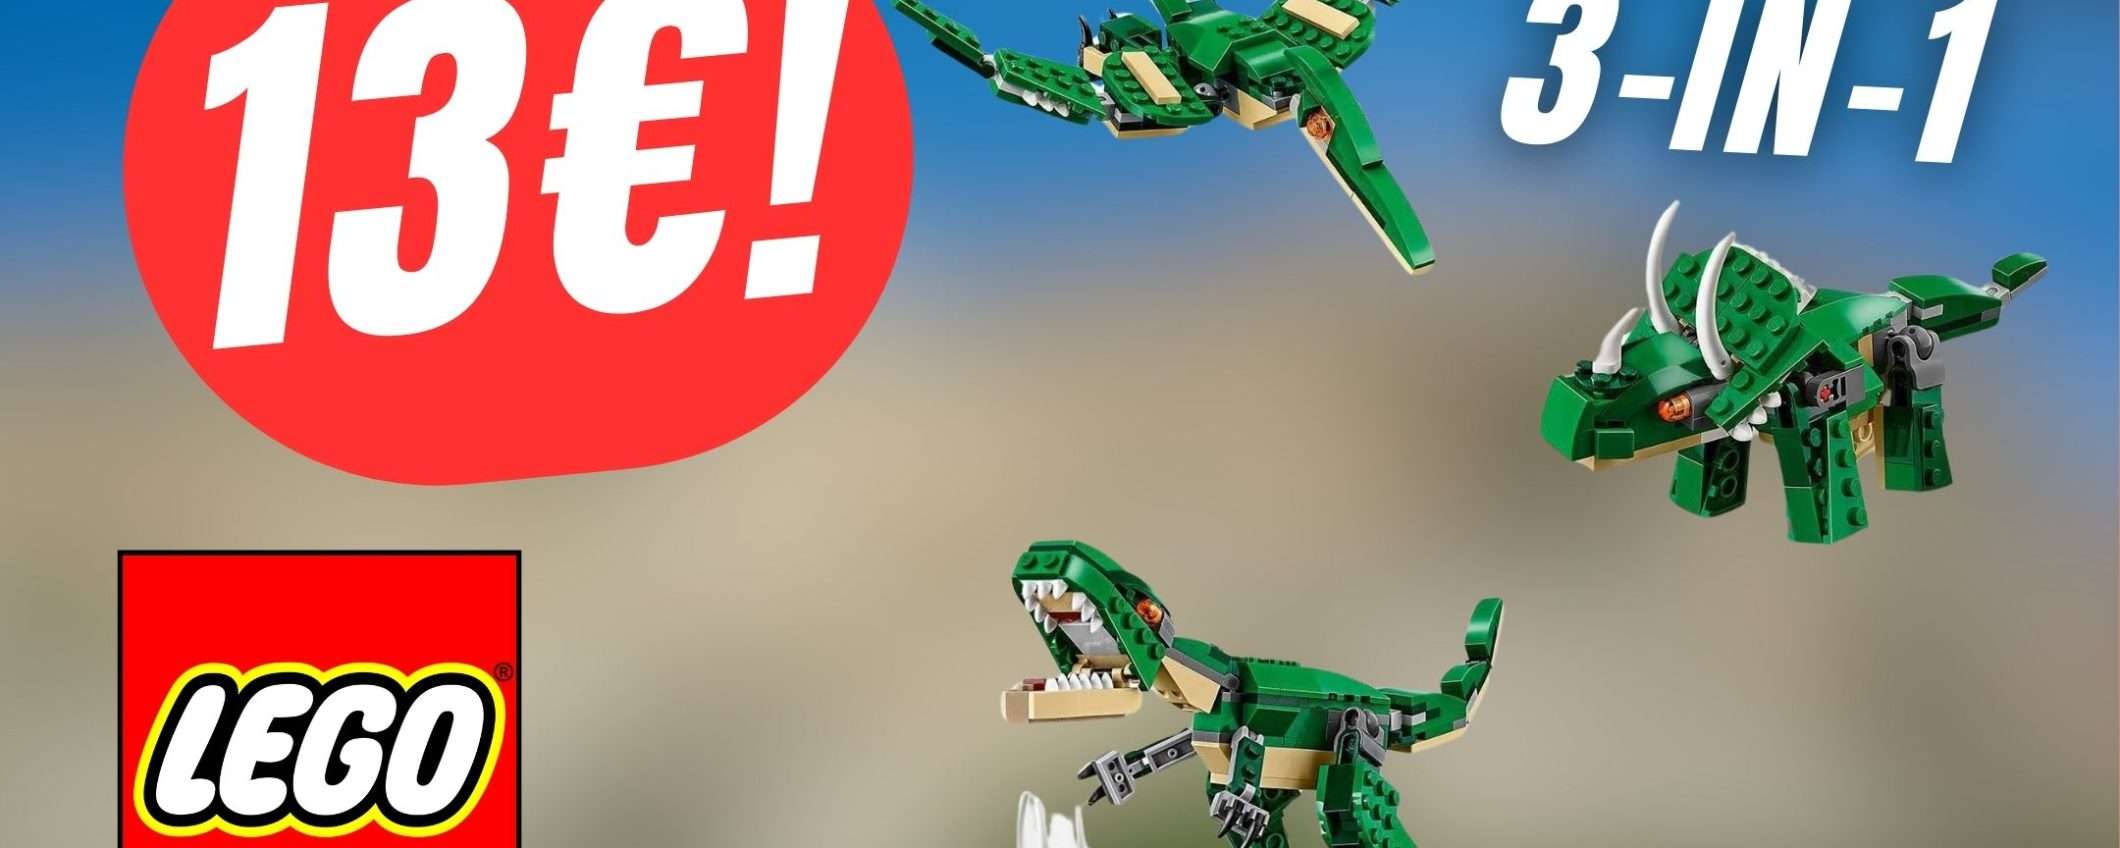 Il set LEGO Dinosauro 3 in 1 COSTA POCHISSIMO